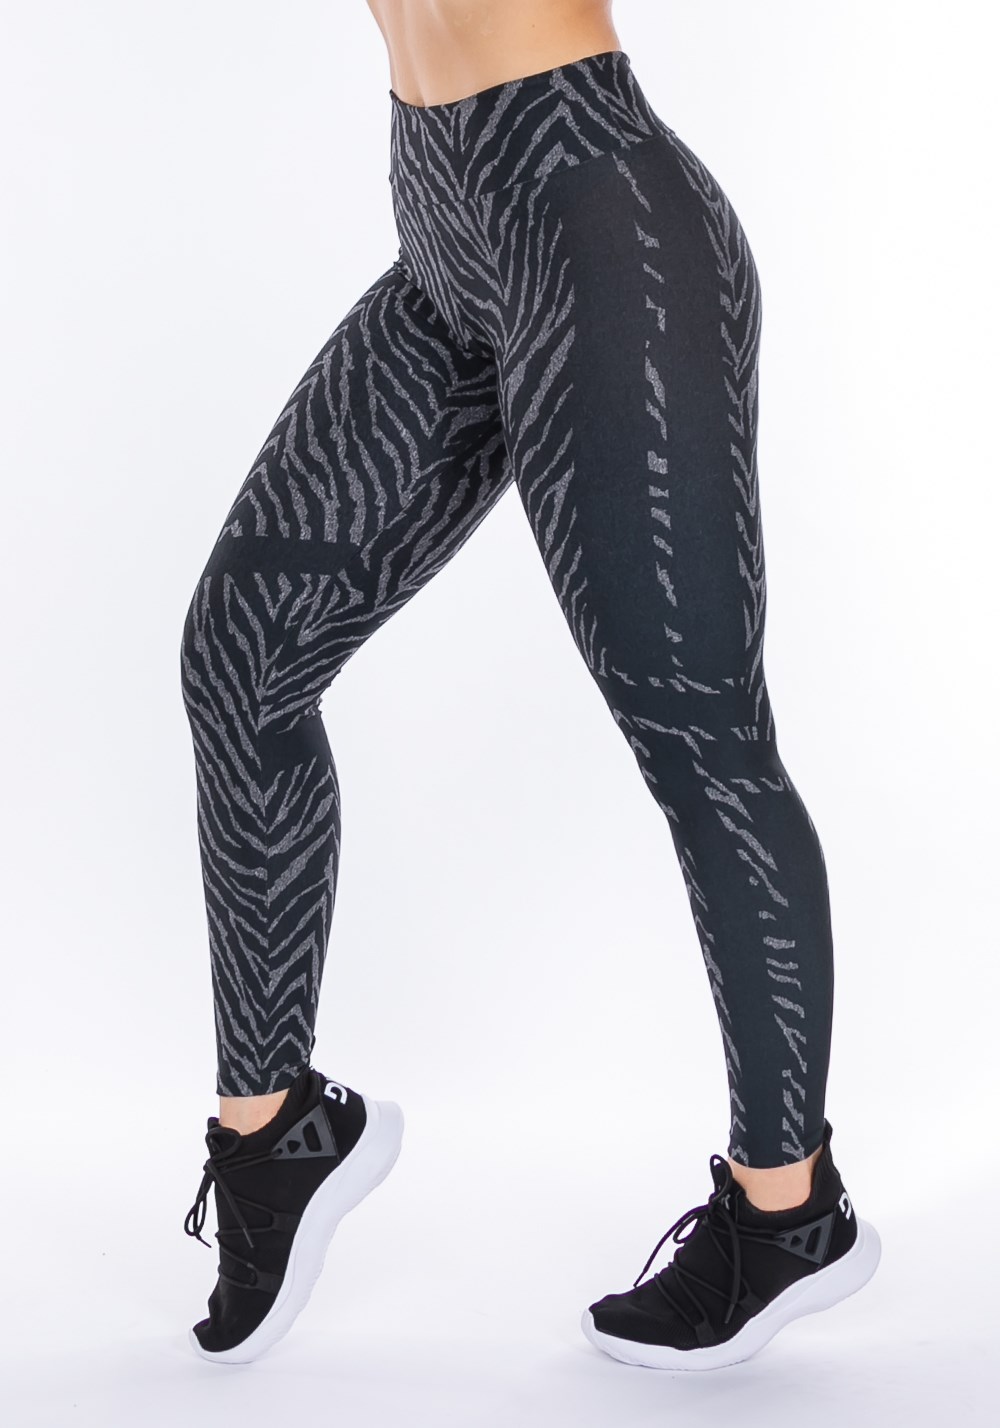 Calça legging sublimada printed zebra